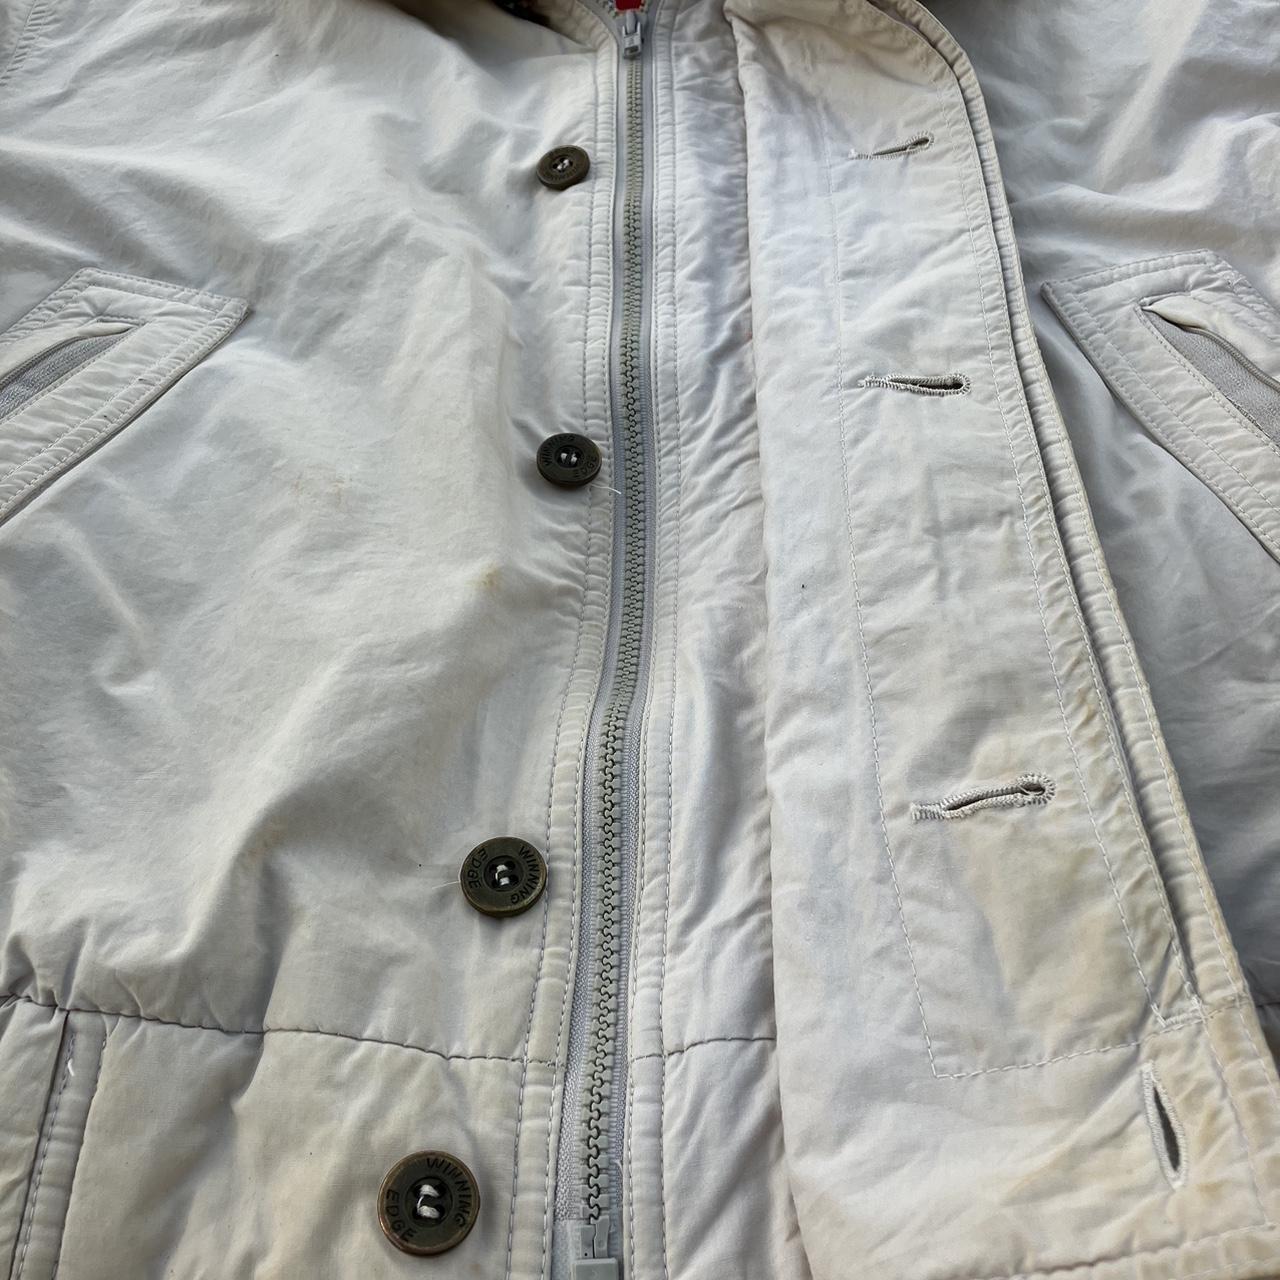 Vintage warm wear jacket. - Depop